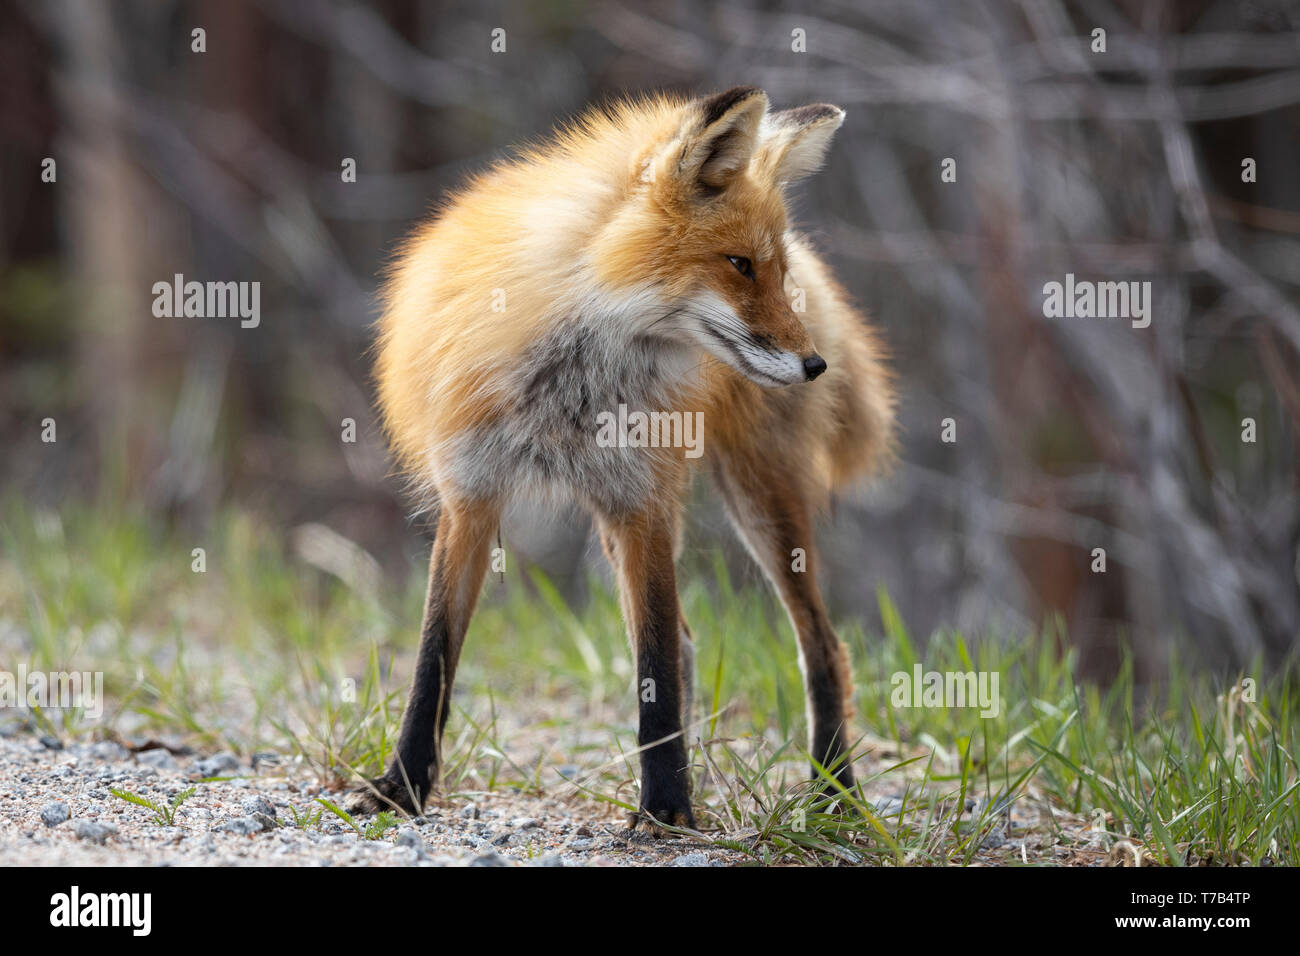 MAYNOOTH, ONTARIO, CANADA - May 04, 2019: A red fox (Vulpes Vulpes